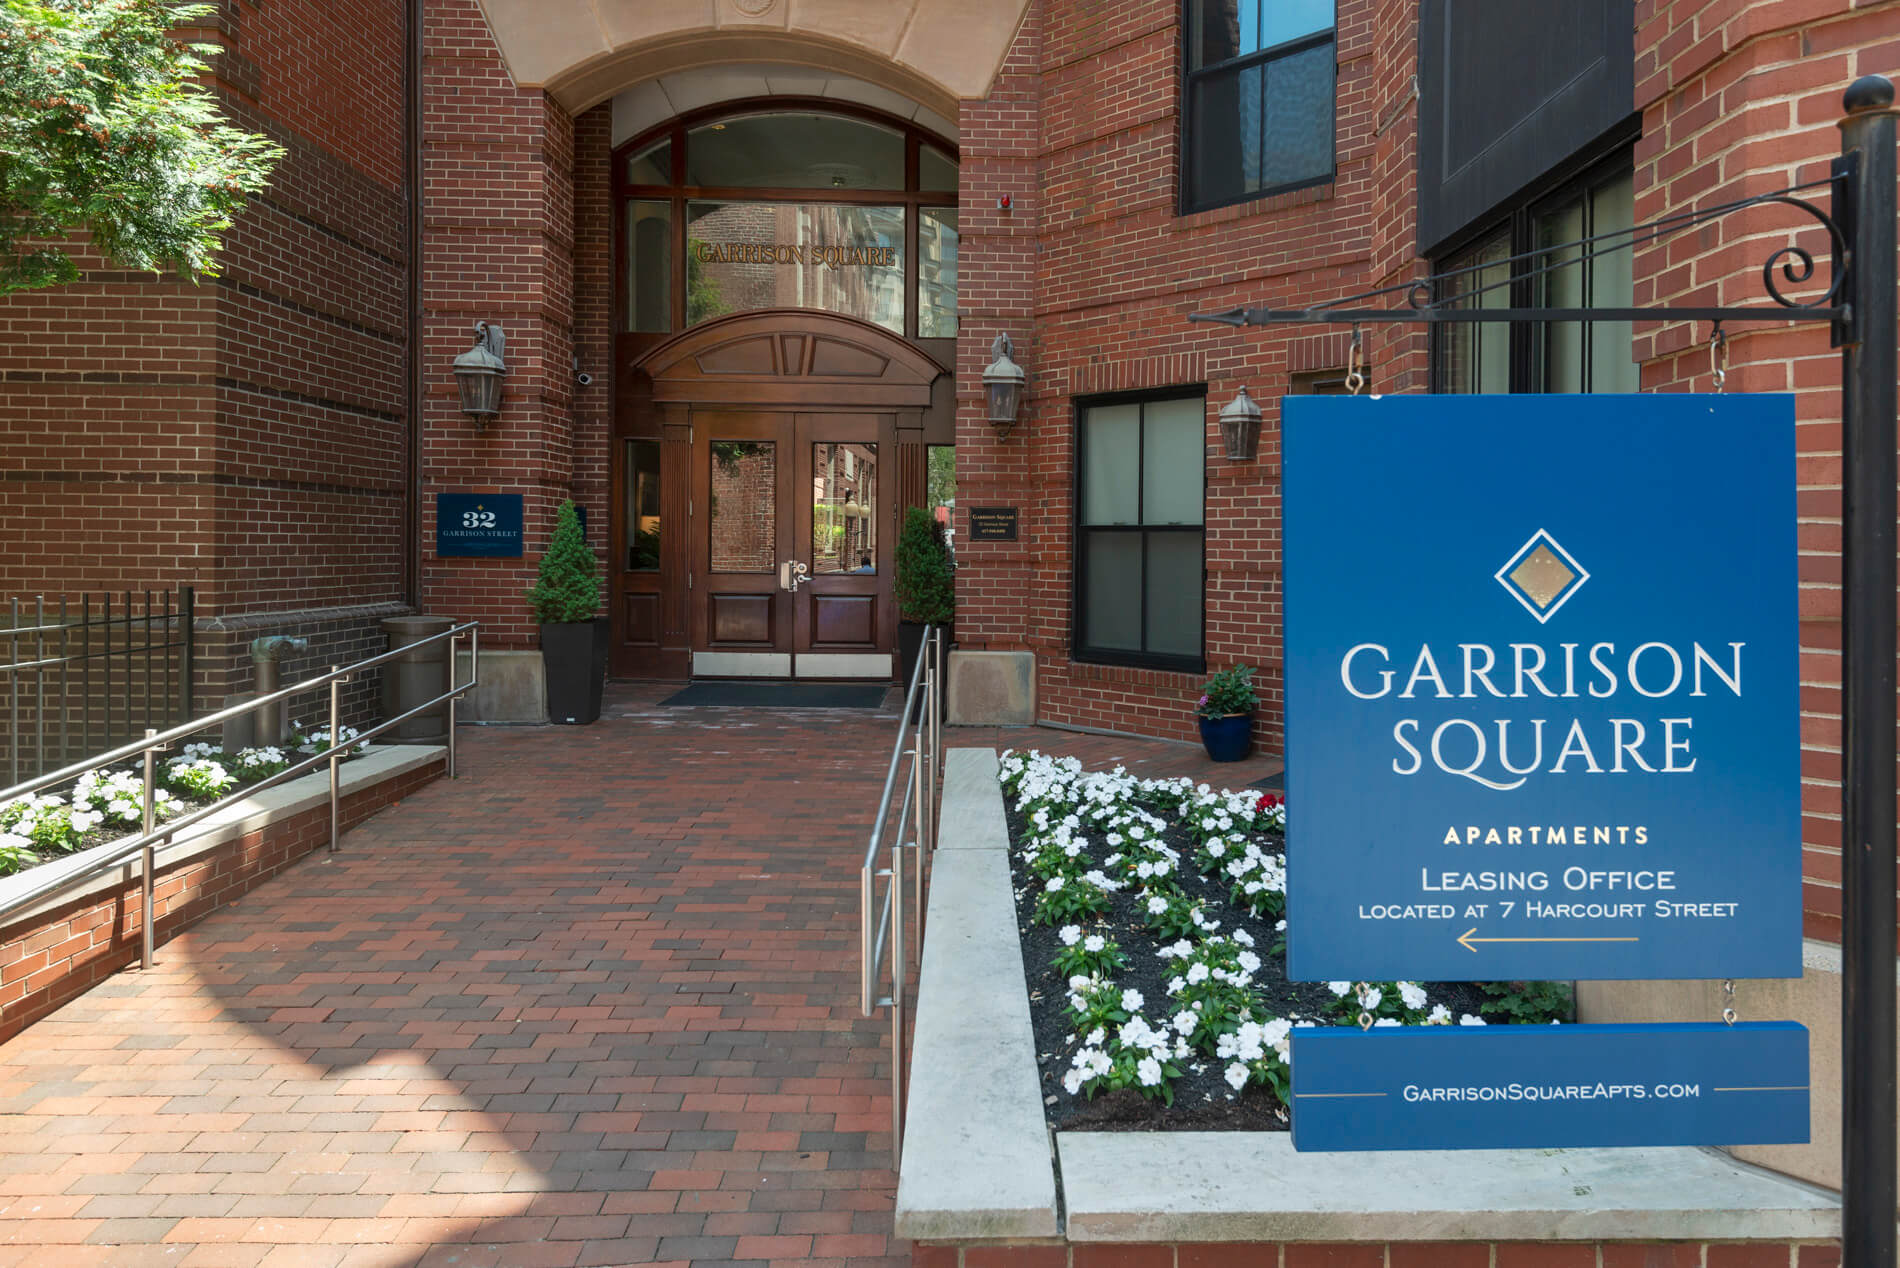 Garrison Square building exterior